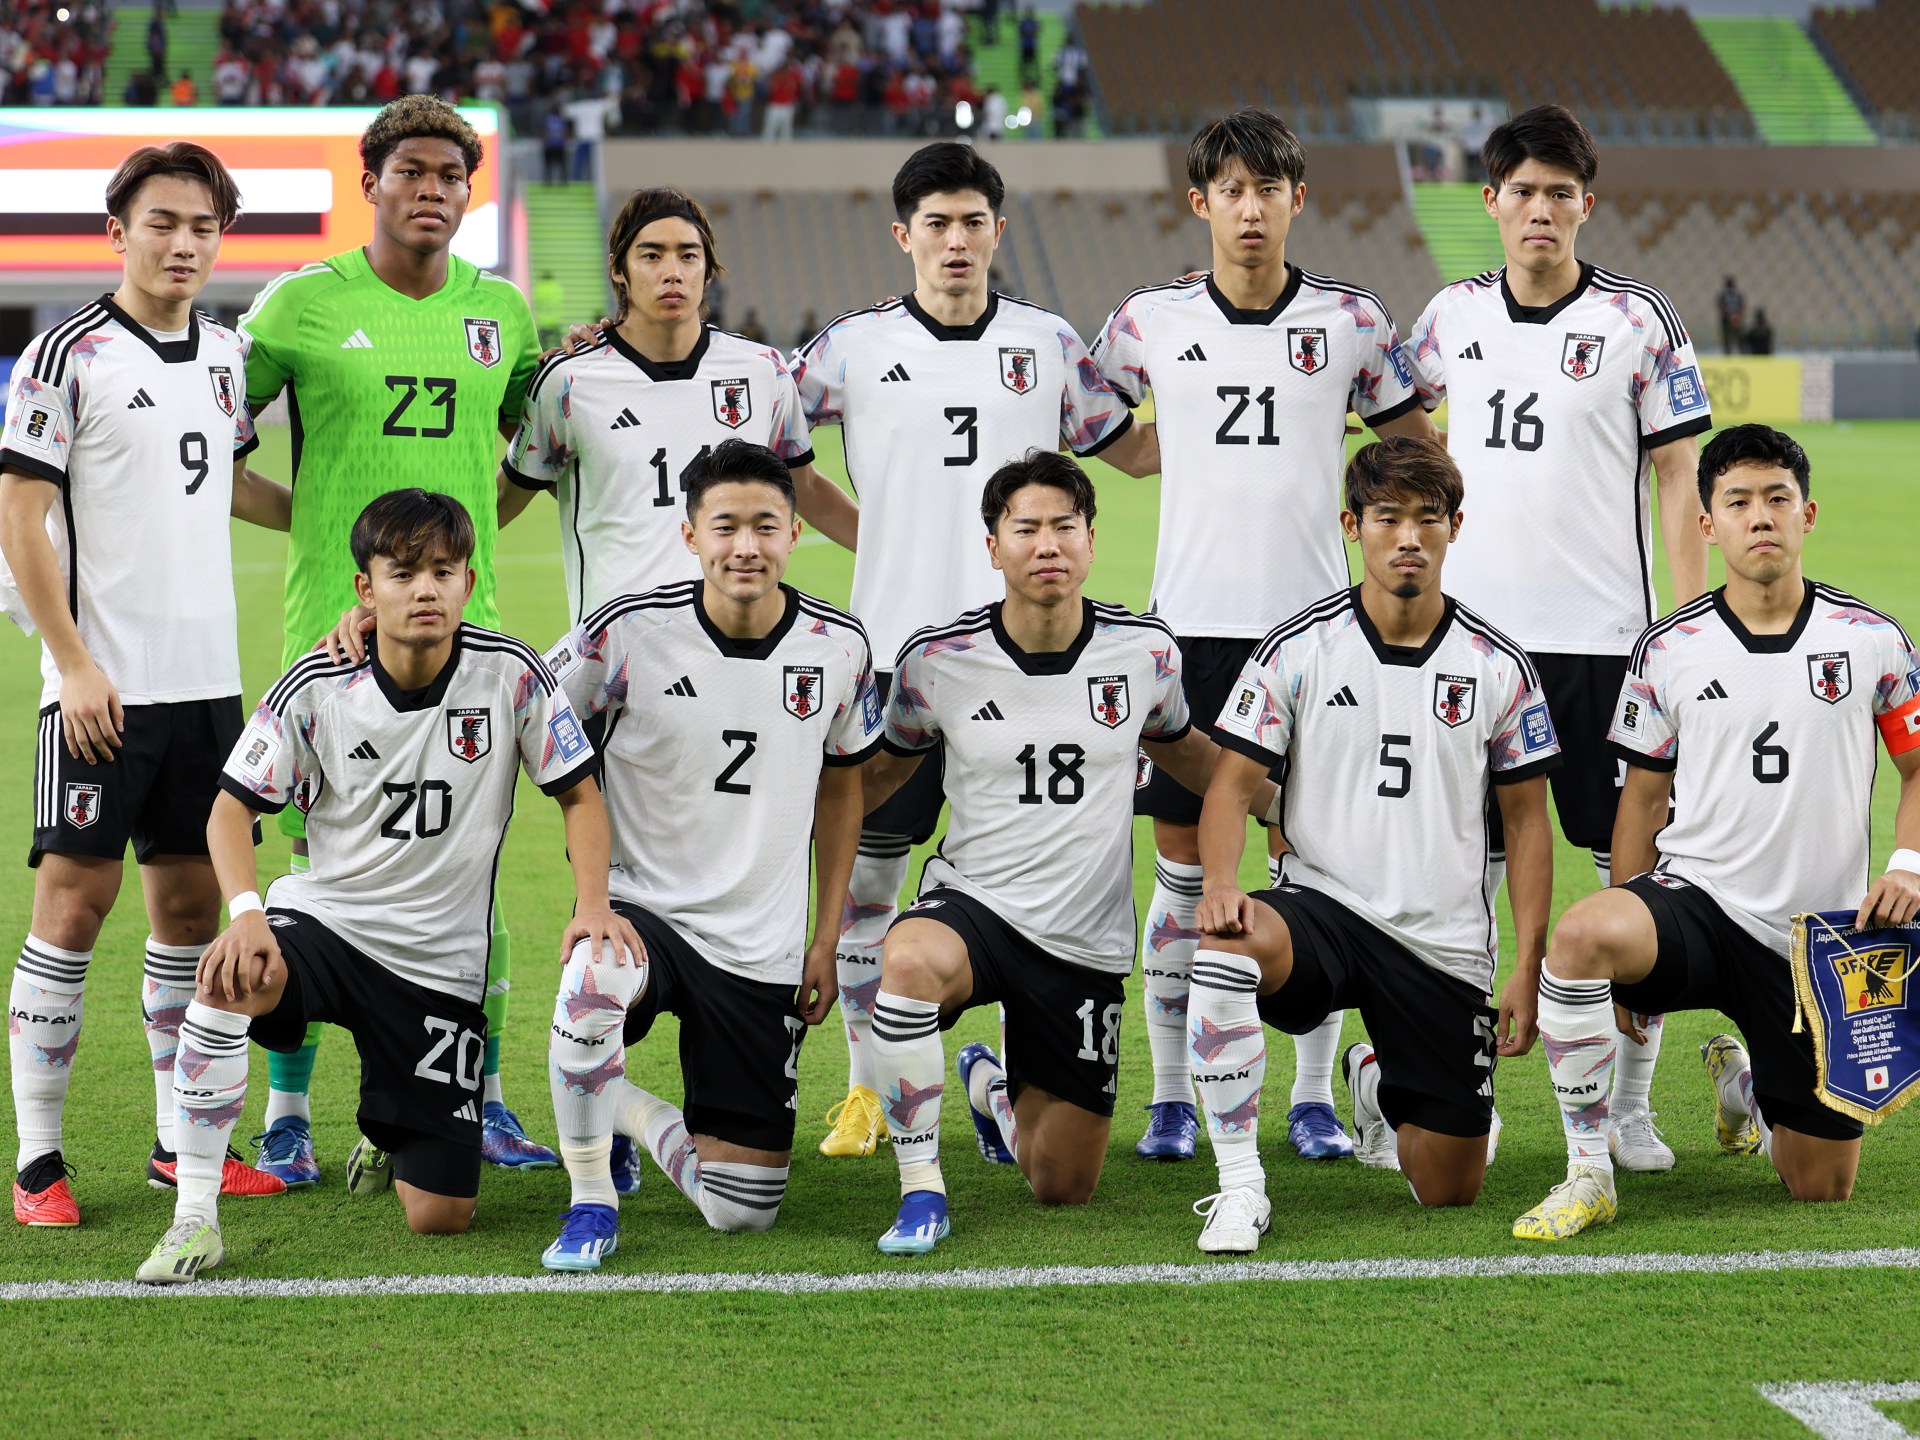 اليابان تحلق عاليا.. أغلى المنتخبات المشاركة في أمم آسيا 2023 | رياضة – البوكس نيوز